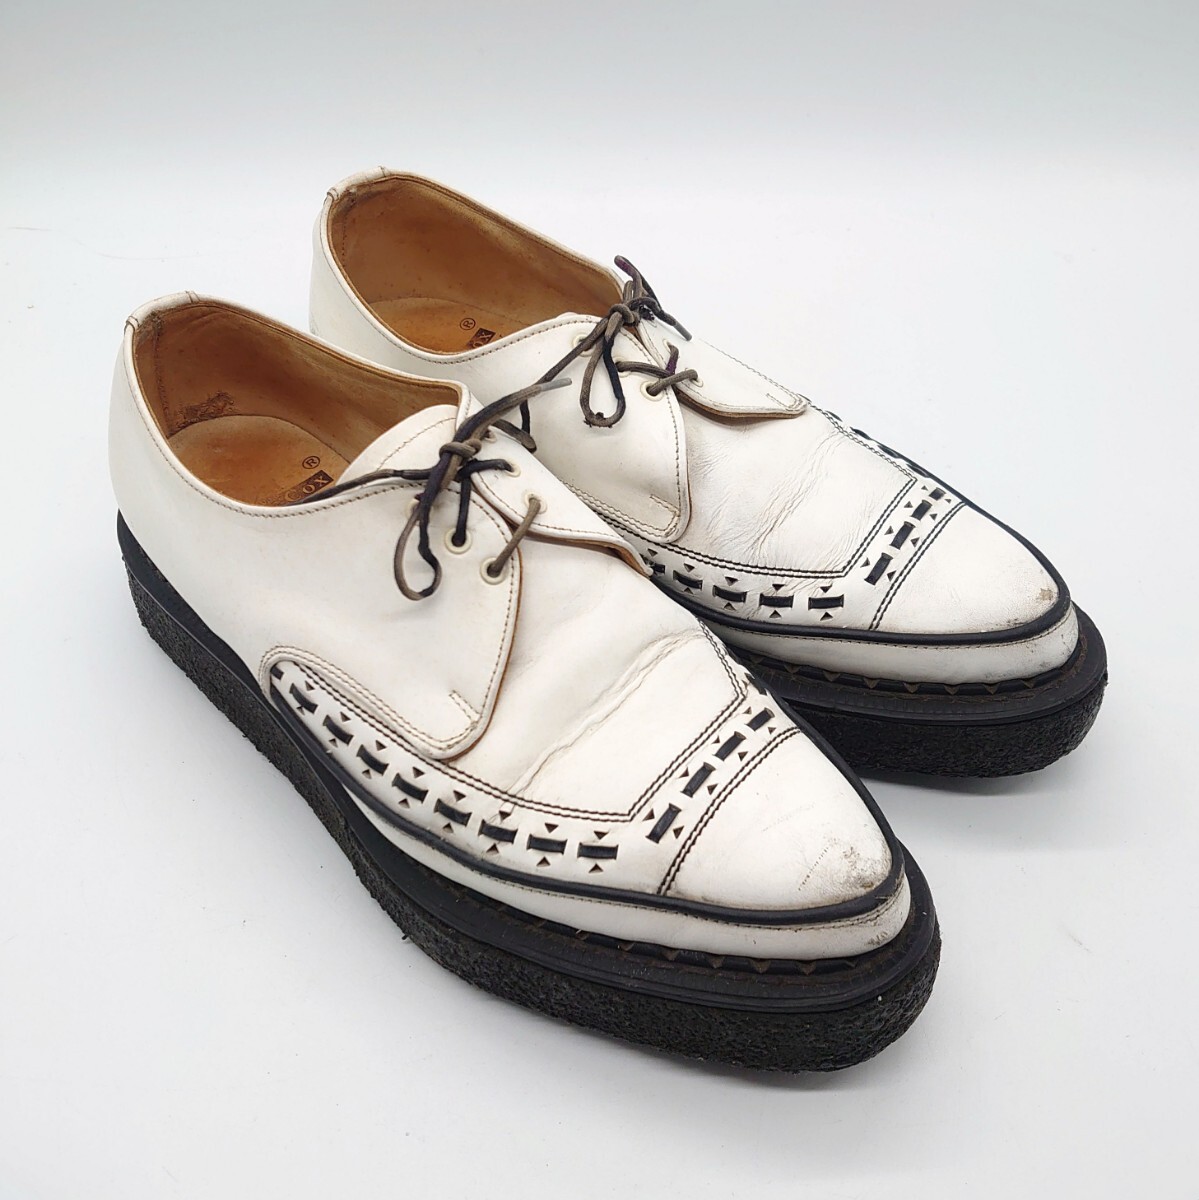 GEORGE COX ジョージコックス 5289 GIBSON ギブソン ラバーソール シューズ 靴 イングランド 英国製 ブラック ホワイト ブランド tp-24x290_画像2